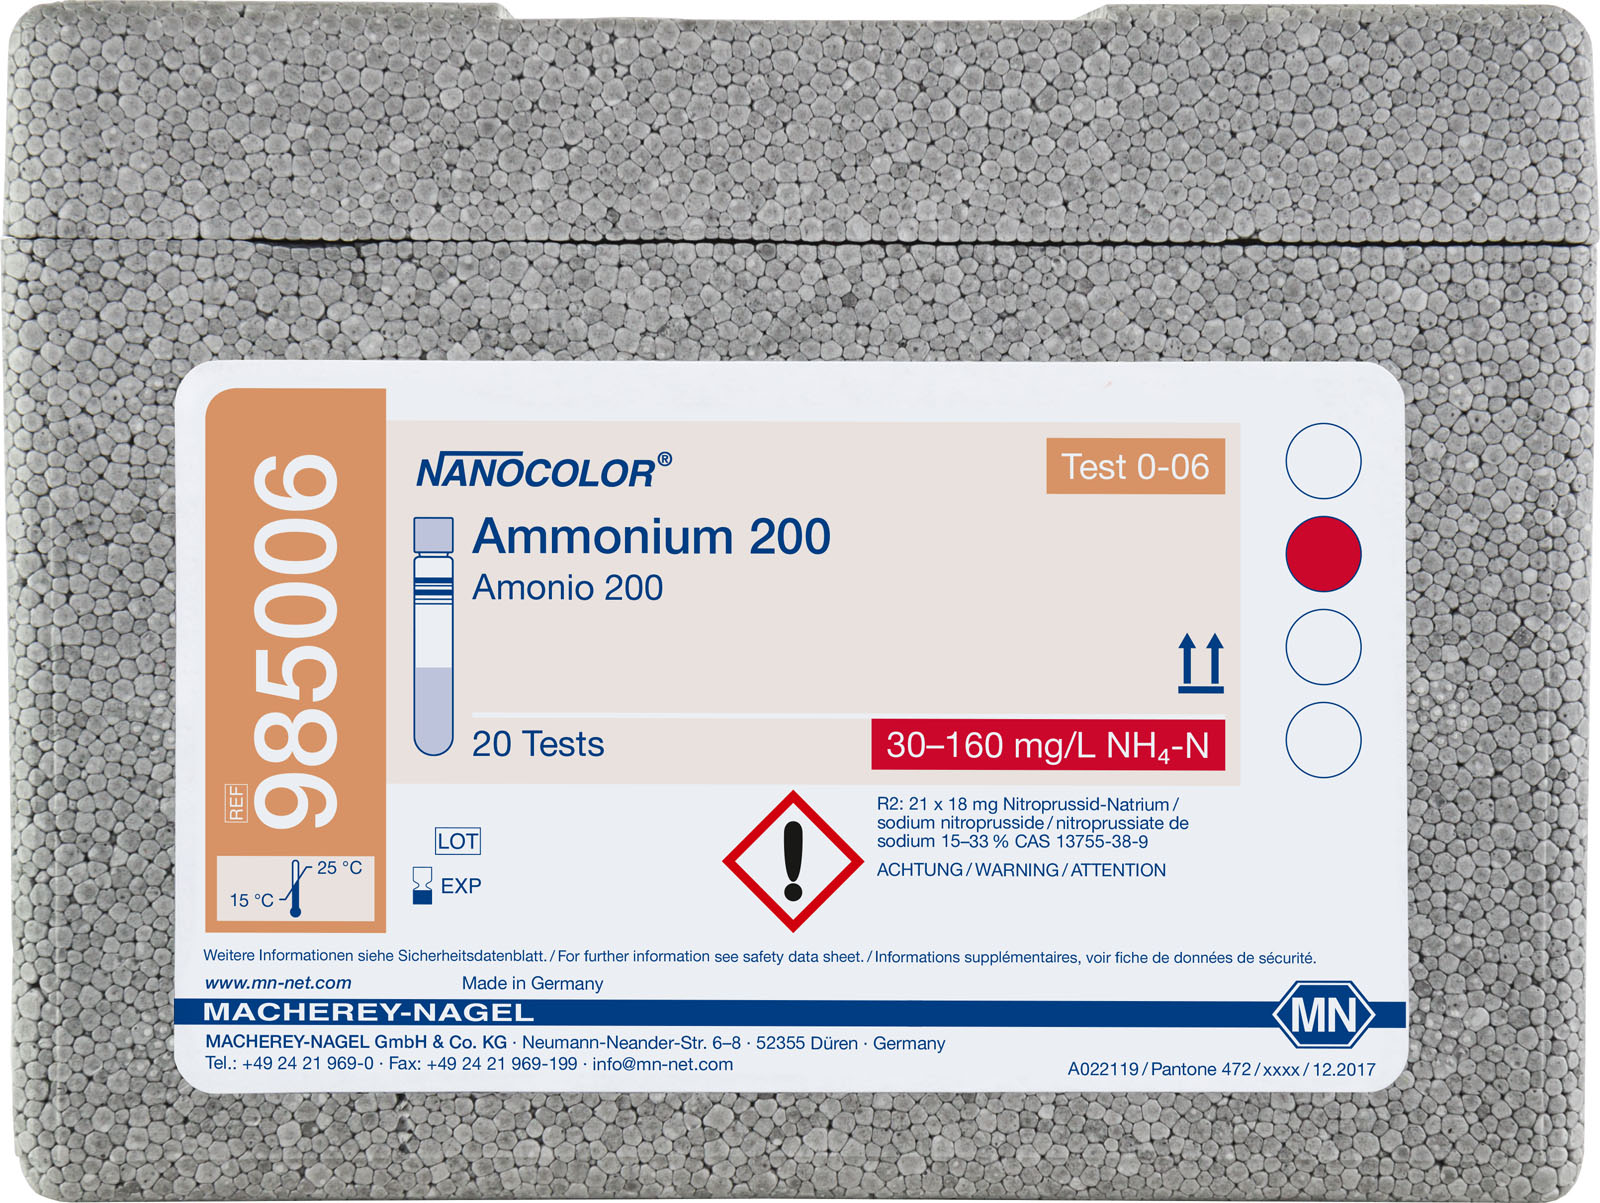 RUK NANOCOLOR- Ammonium 200